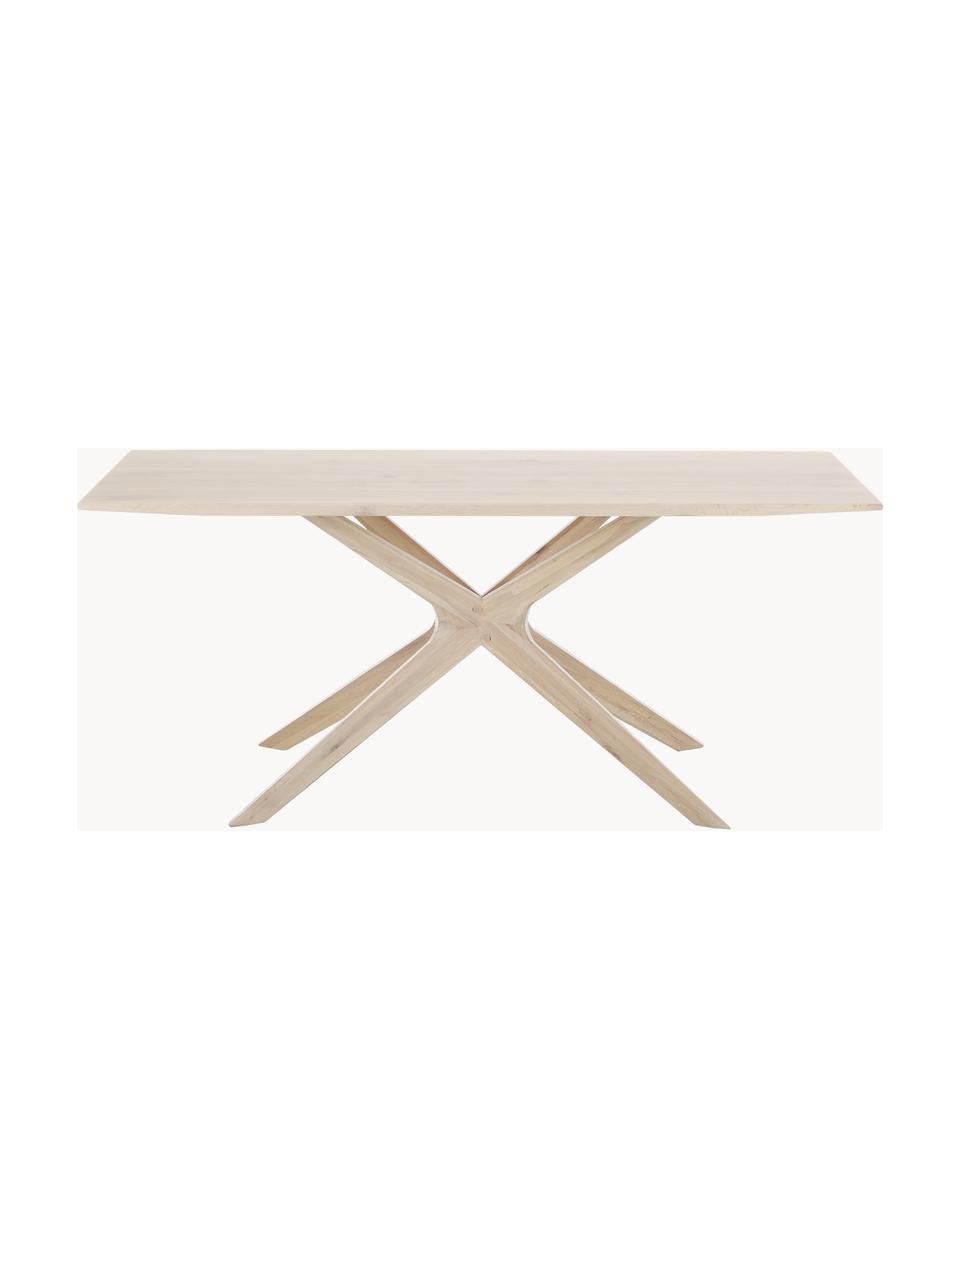 Table en bois de chêne Armande, 180 x 90 cm, Bois de chêne, ciré, blanc laqué, Bois de chêne, larg. 180 x prof. 90 cm